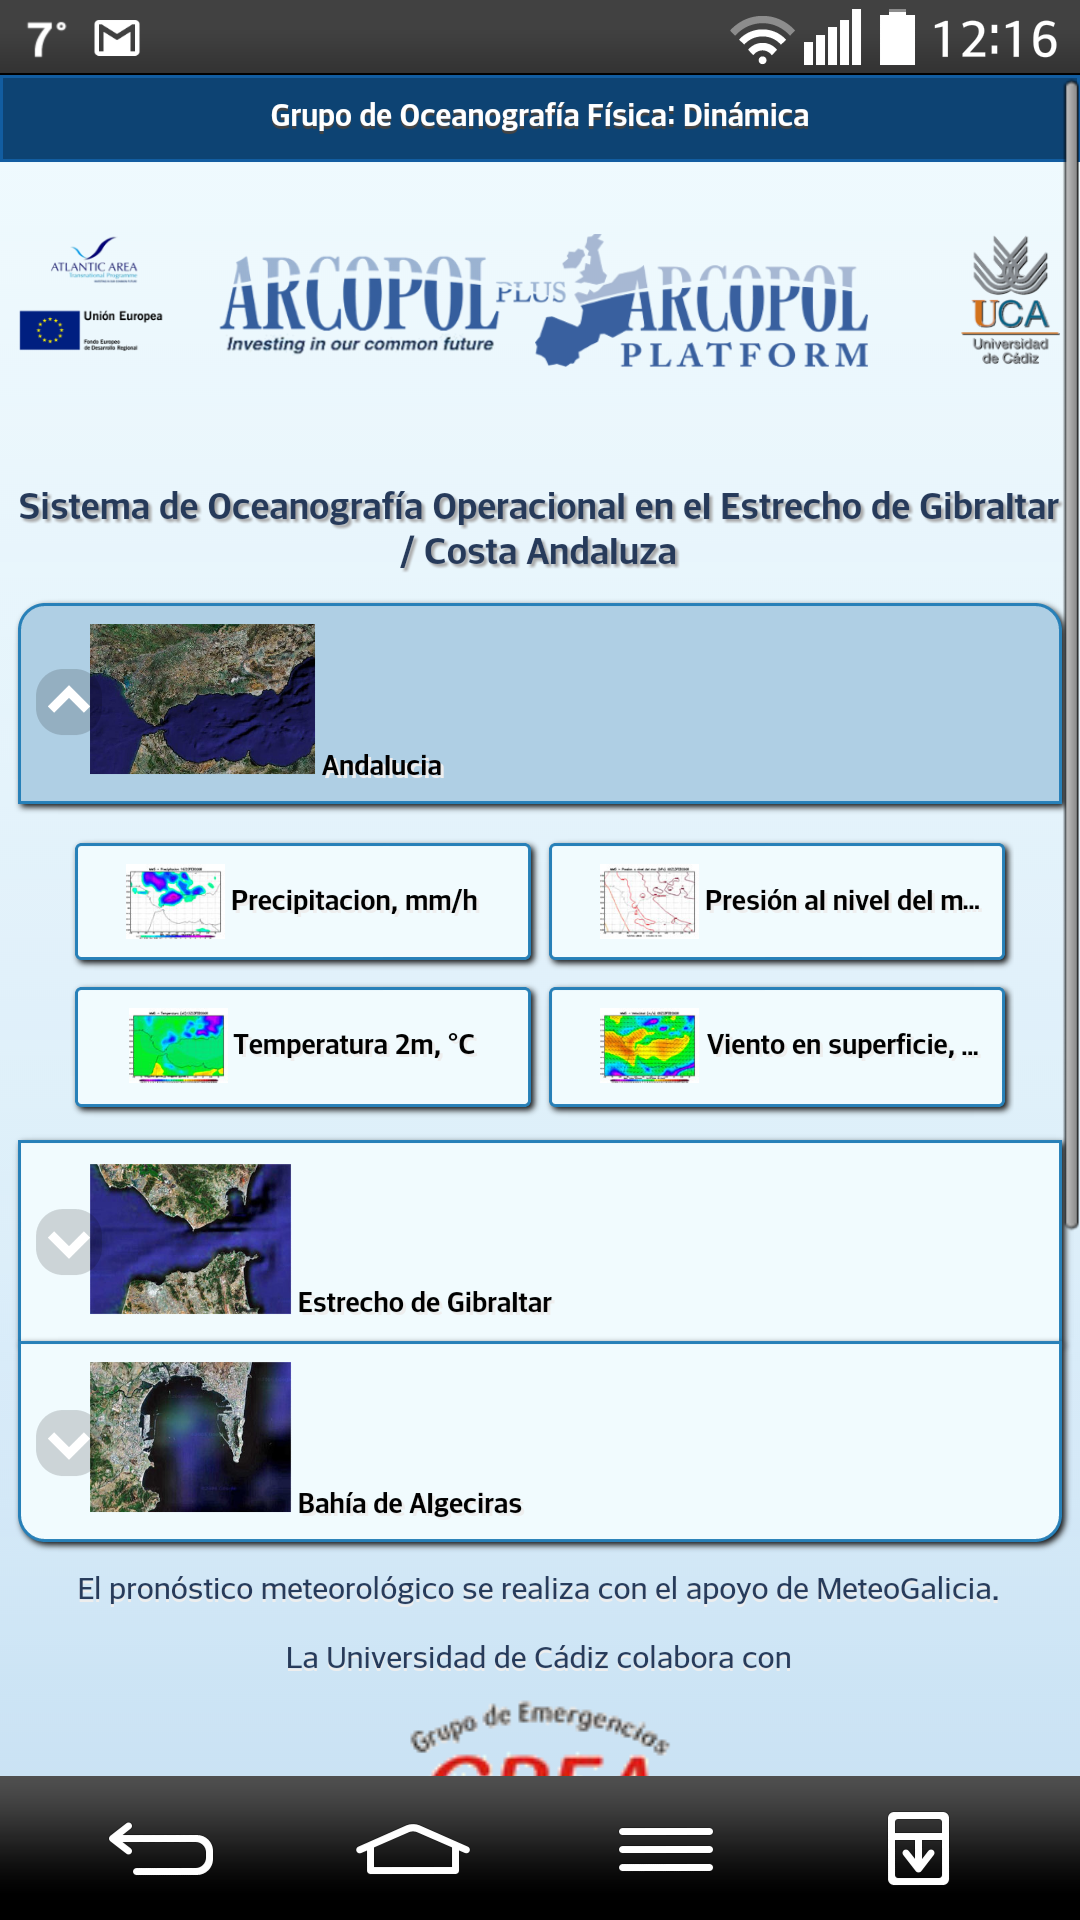 La Universidad de Cádiz lanza la aplicación ‘OceanUCA’ para predicciones meteorológicas y oceanográficas